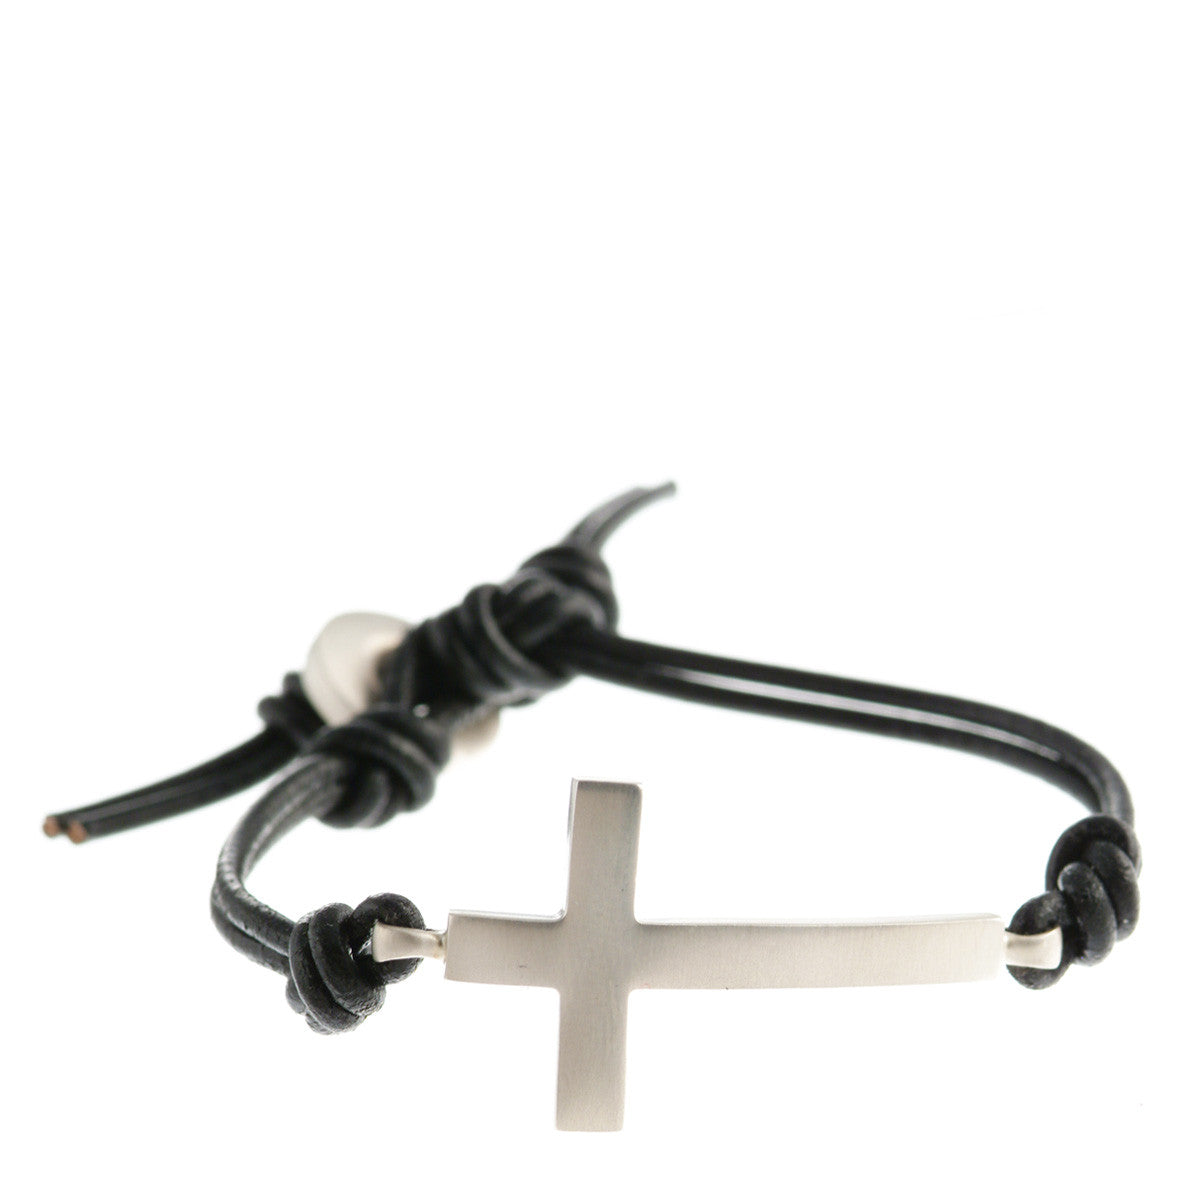 Buy Cross bracelet for men, groomsmen gift, men's bracelet with a silver  cross pendant, brown cord, gift for him, christian catholic jewelry Online  at desertcartINDIA